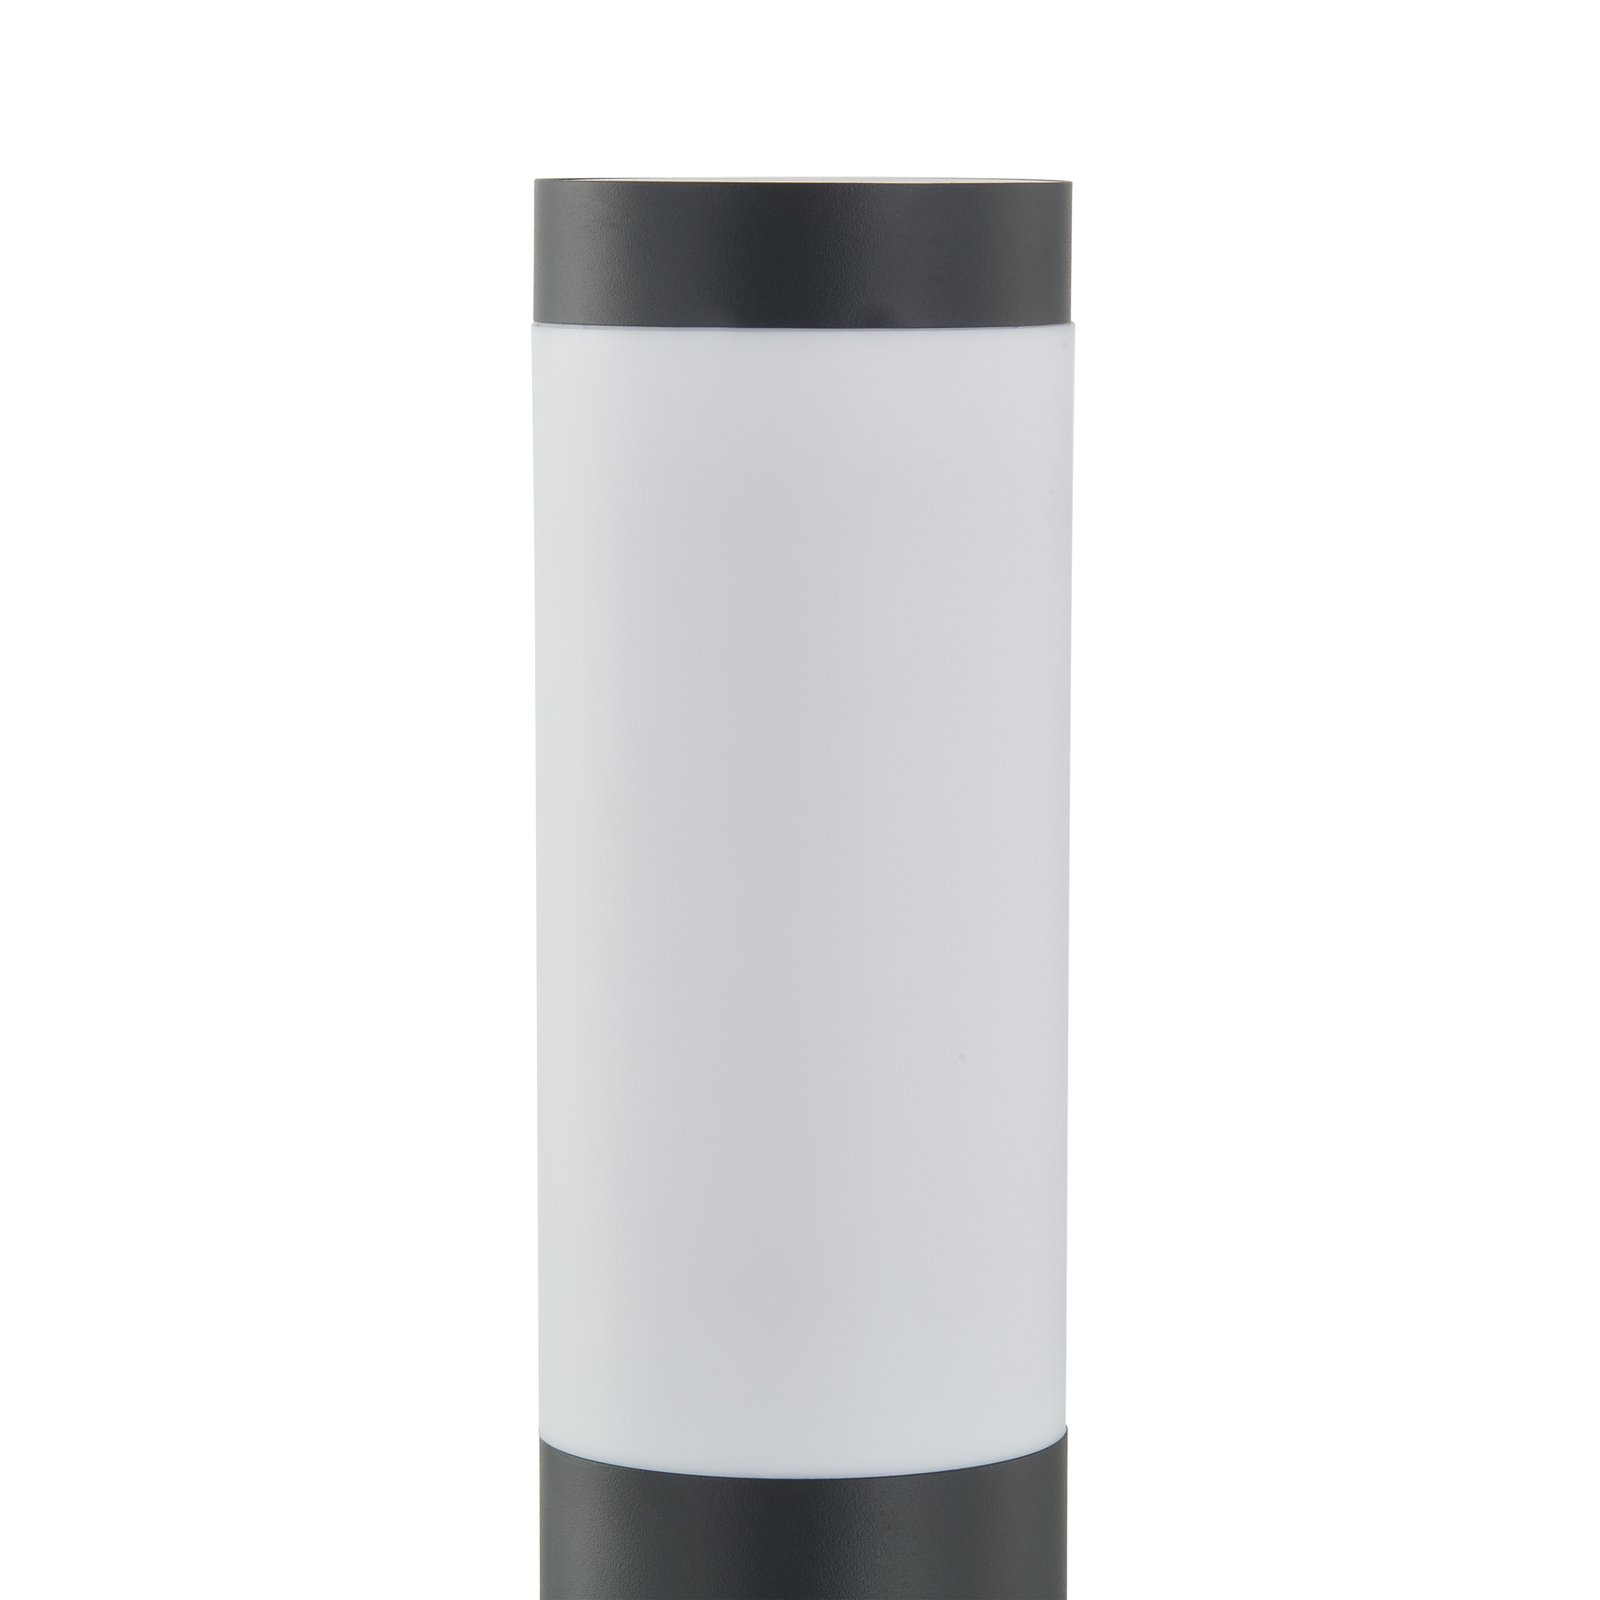 Lindby lampe pour socle Statius, noir, acier inoxydable, 45 cm